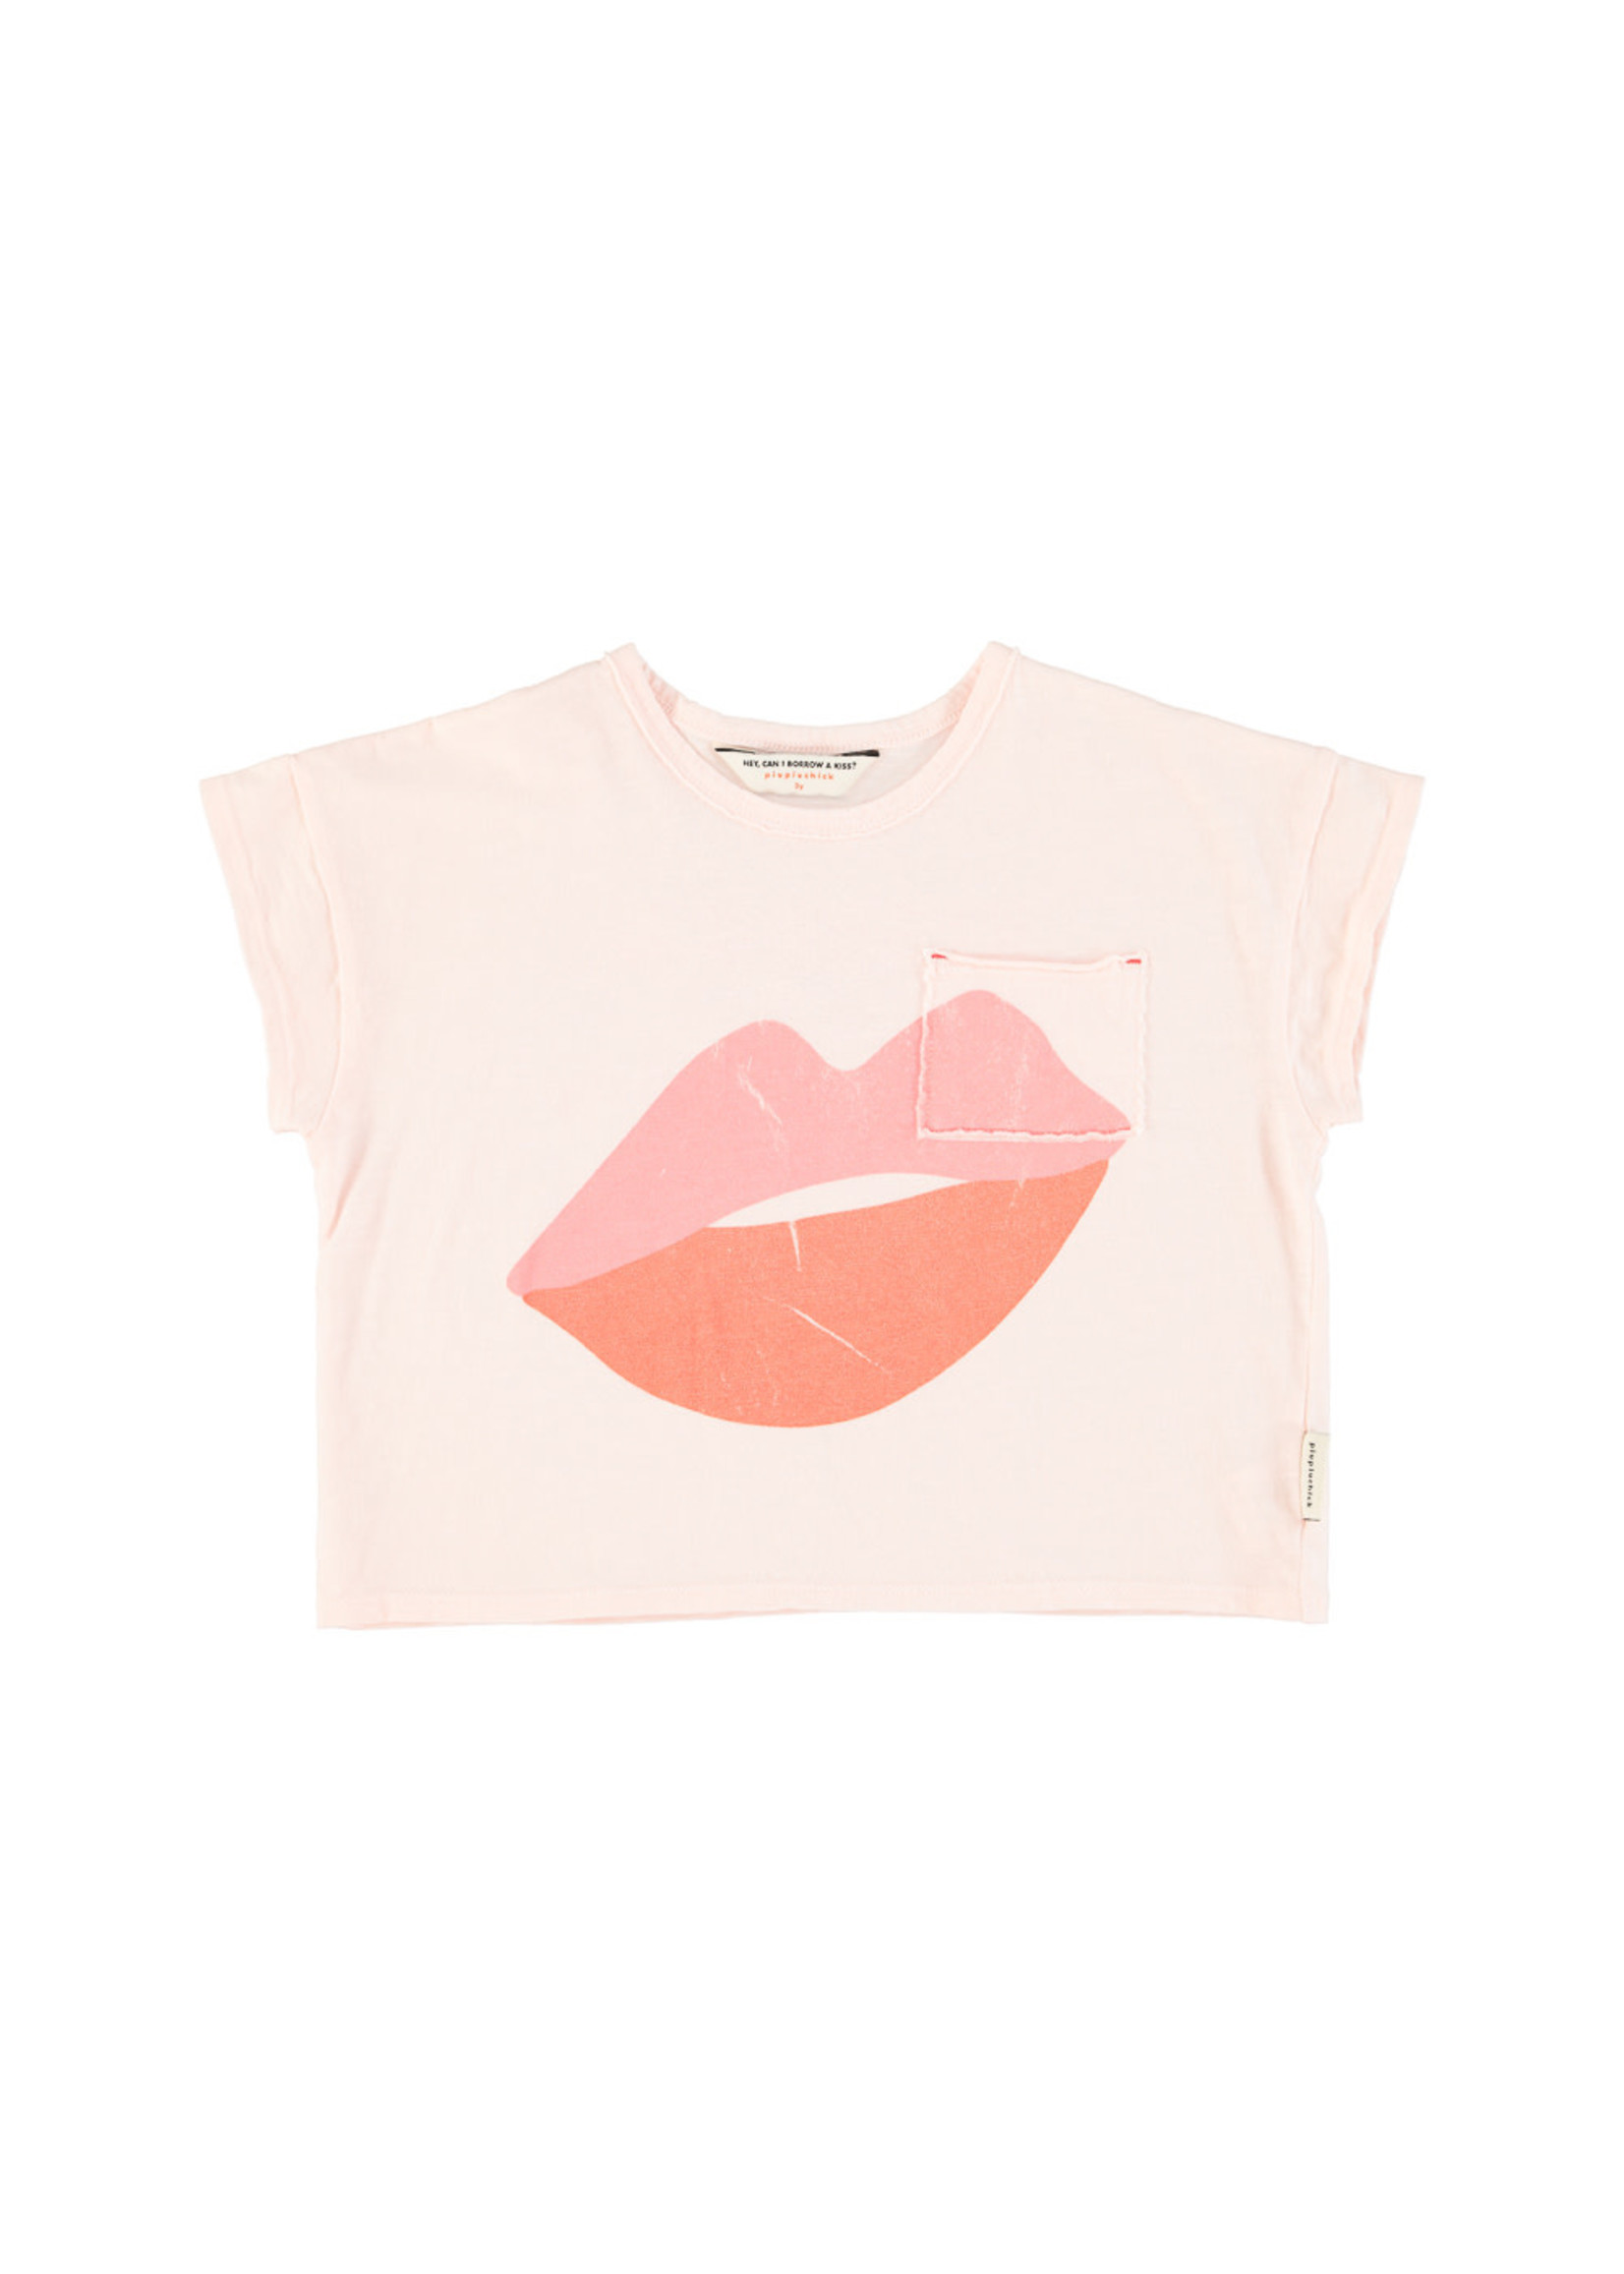 Piupiuchick Piupiuchick- T-shirt - Light Pink W/ Lips Print